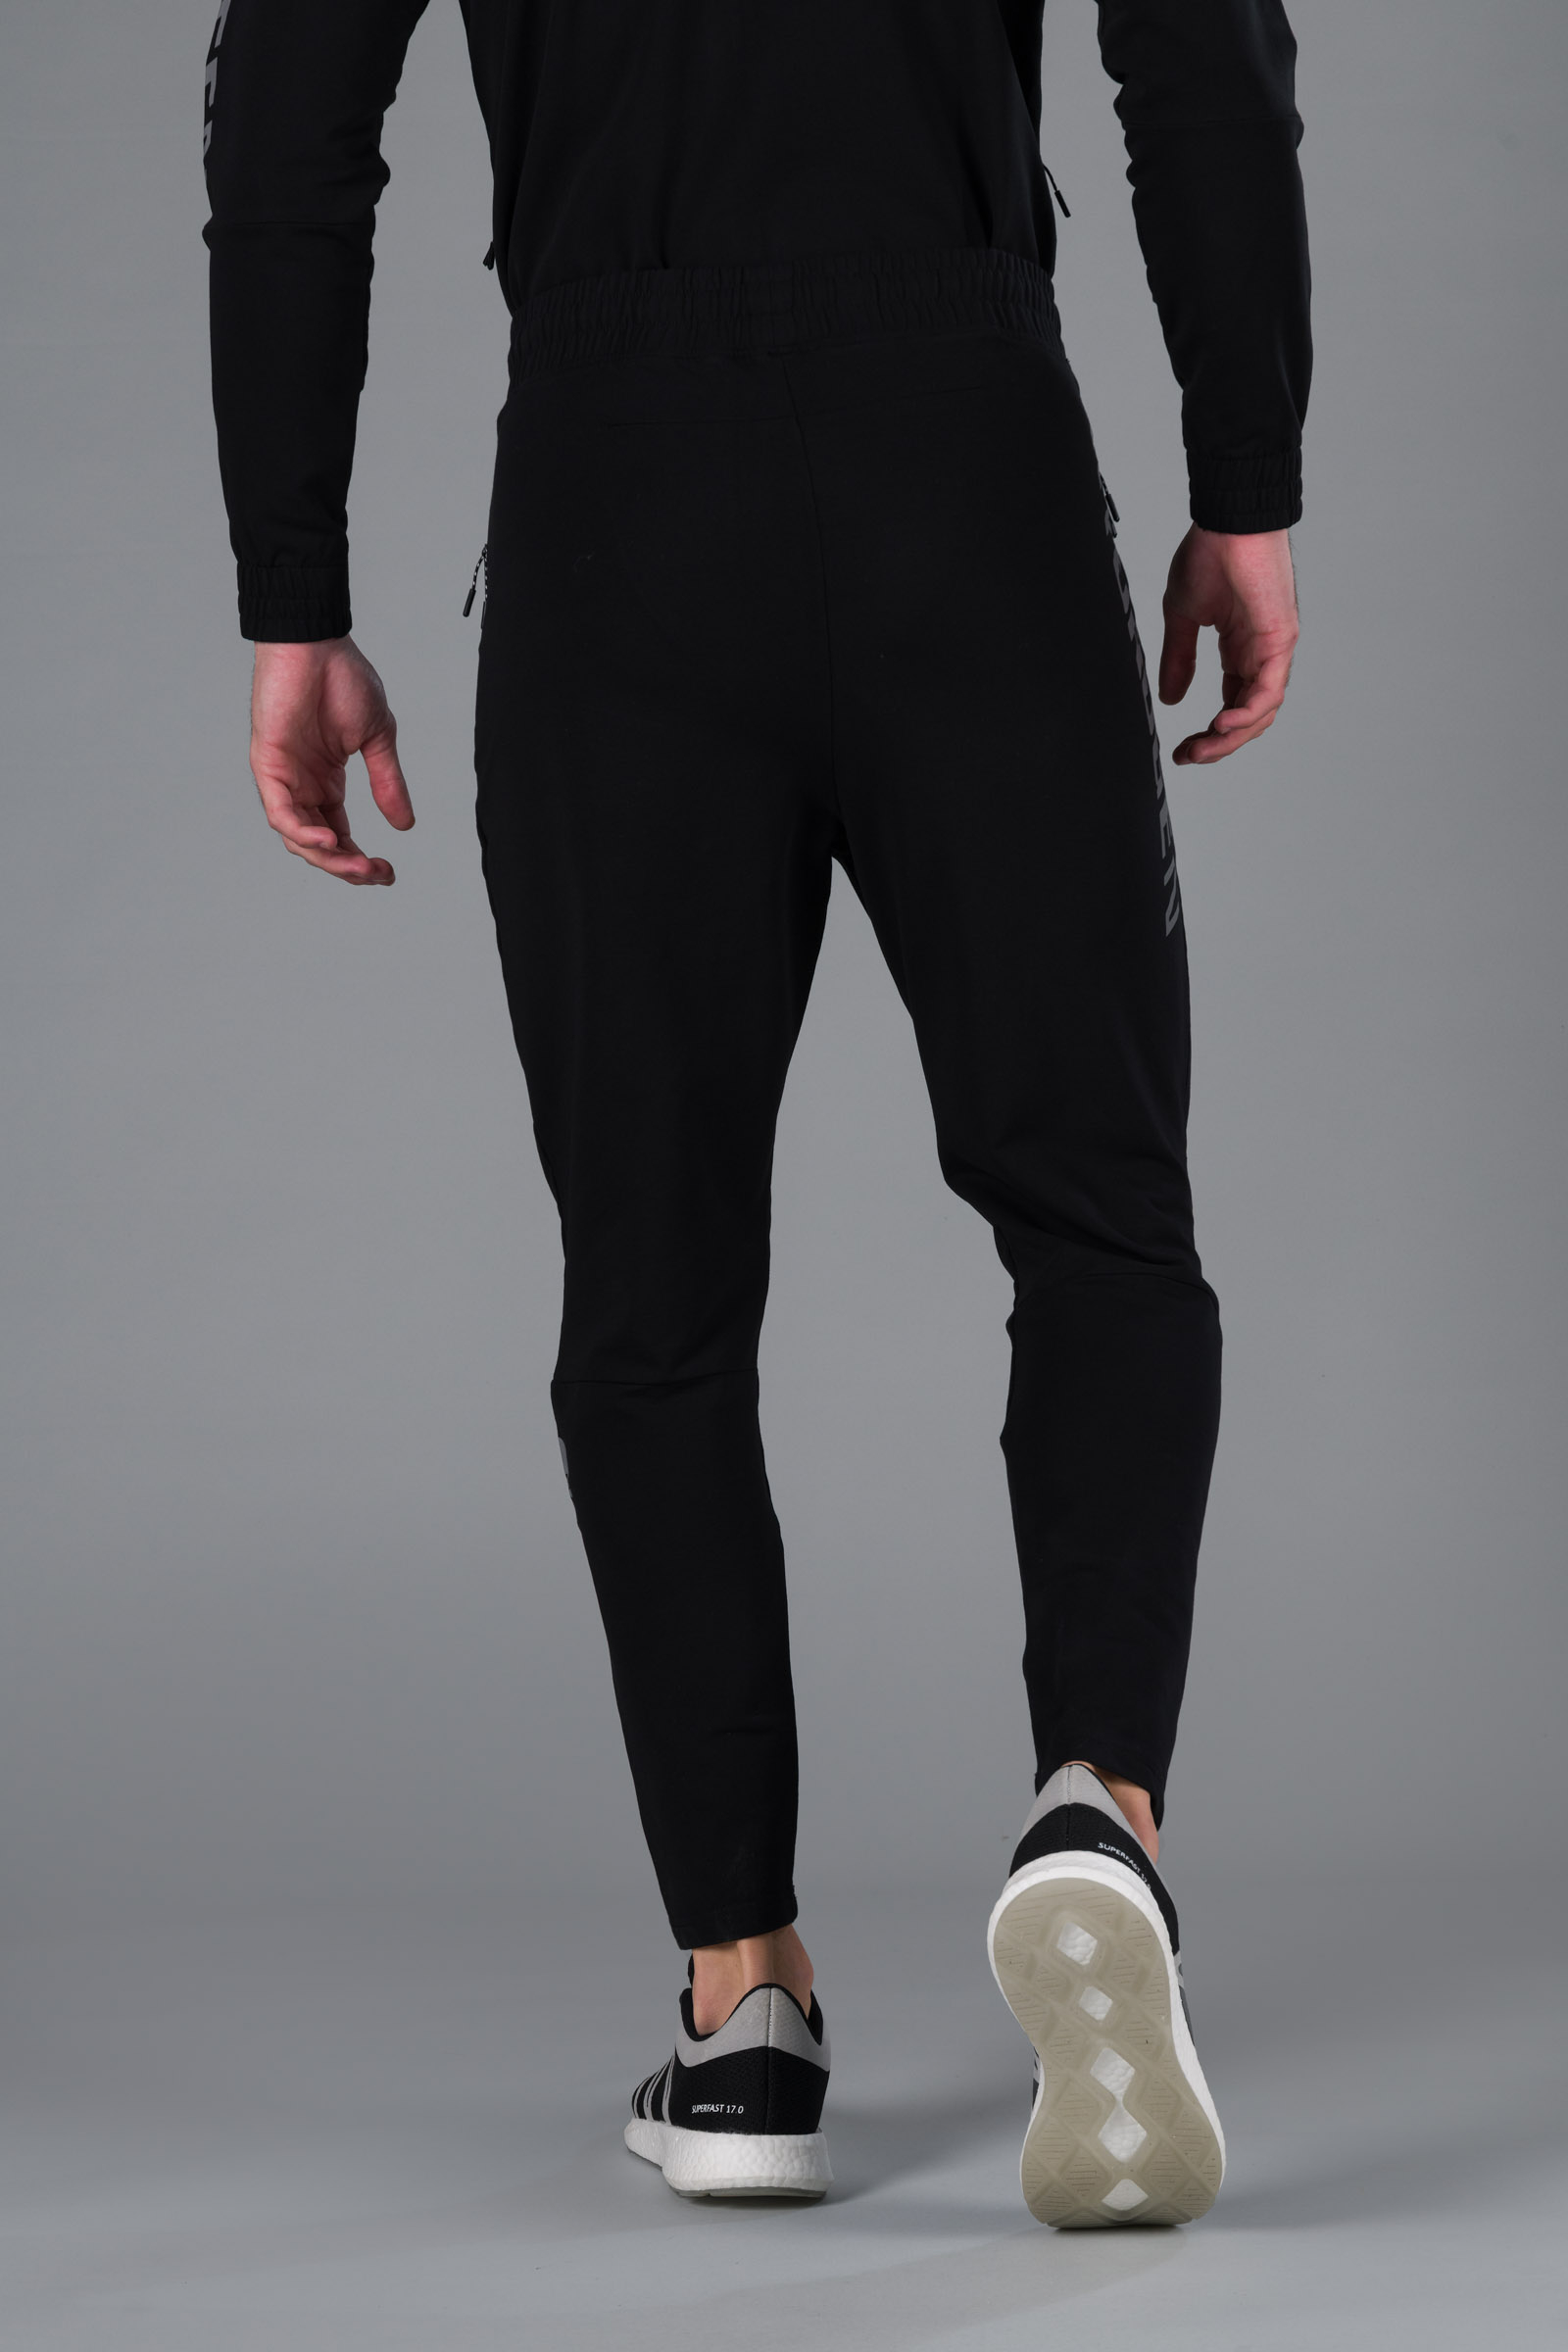 HYDROGEN PANTS - BLACK - Hydrogen - Luxury Sportwear